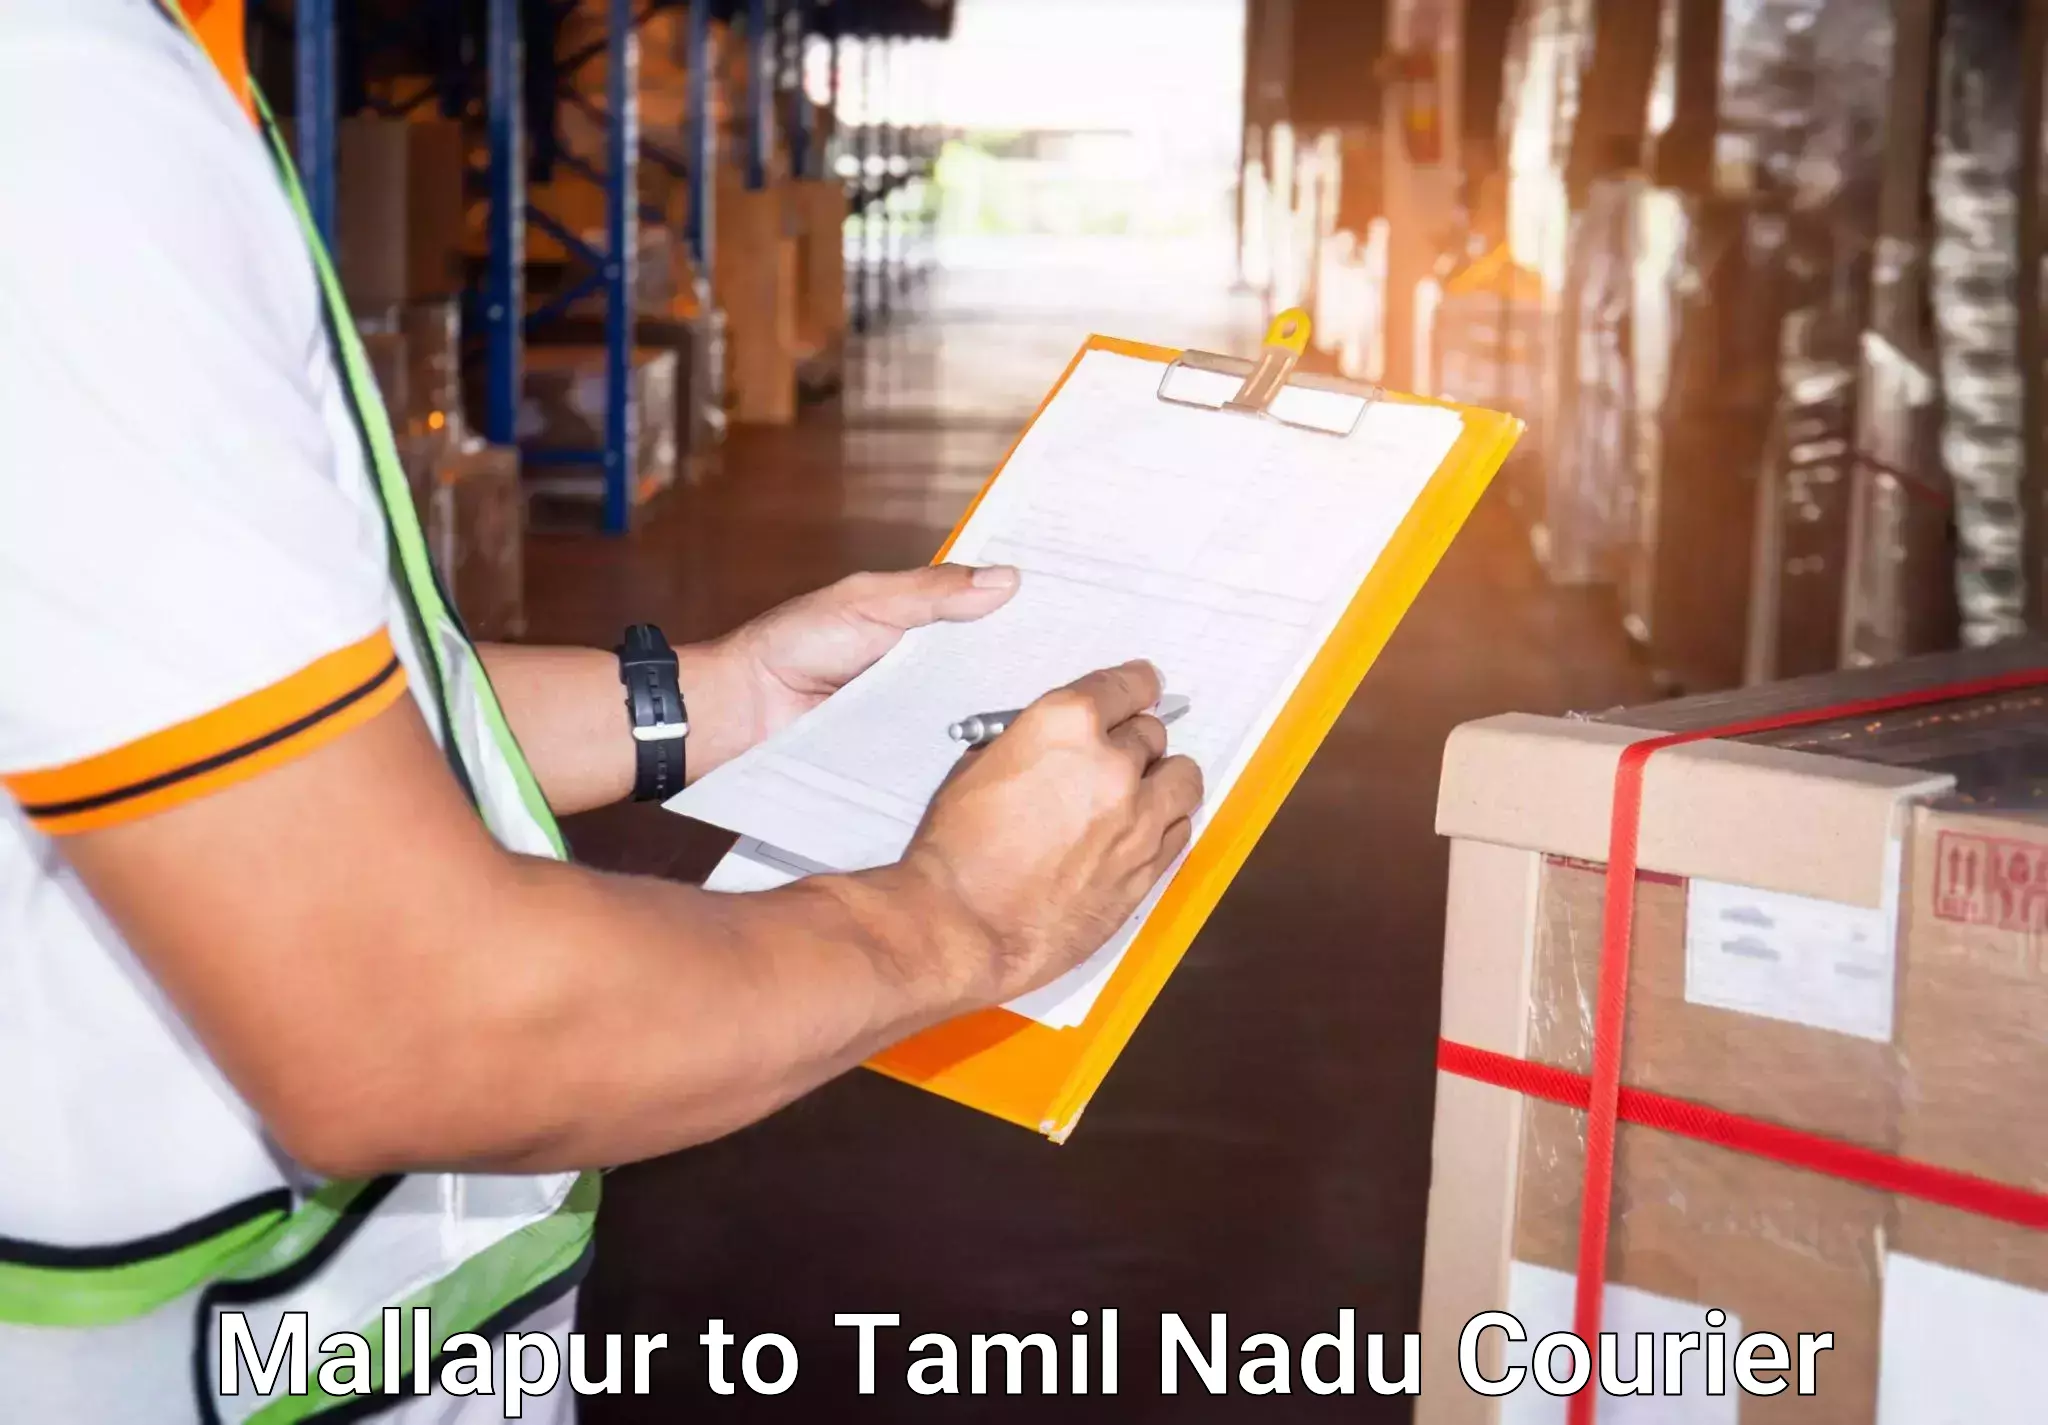 Personal effects shipping Mallapur to Tiruvannamalai